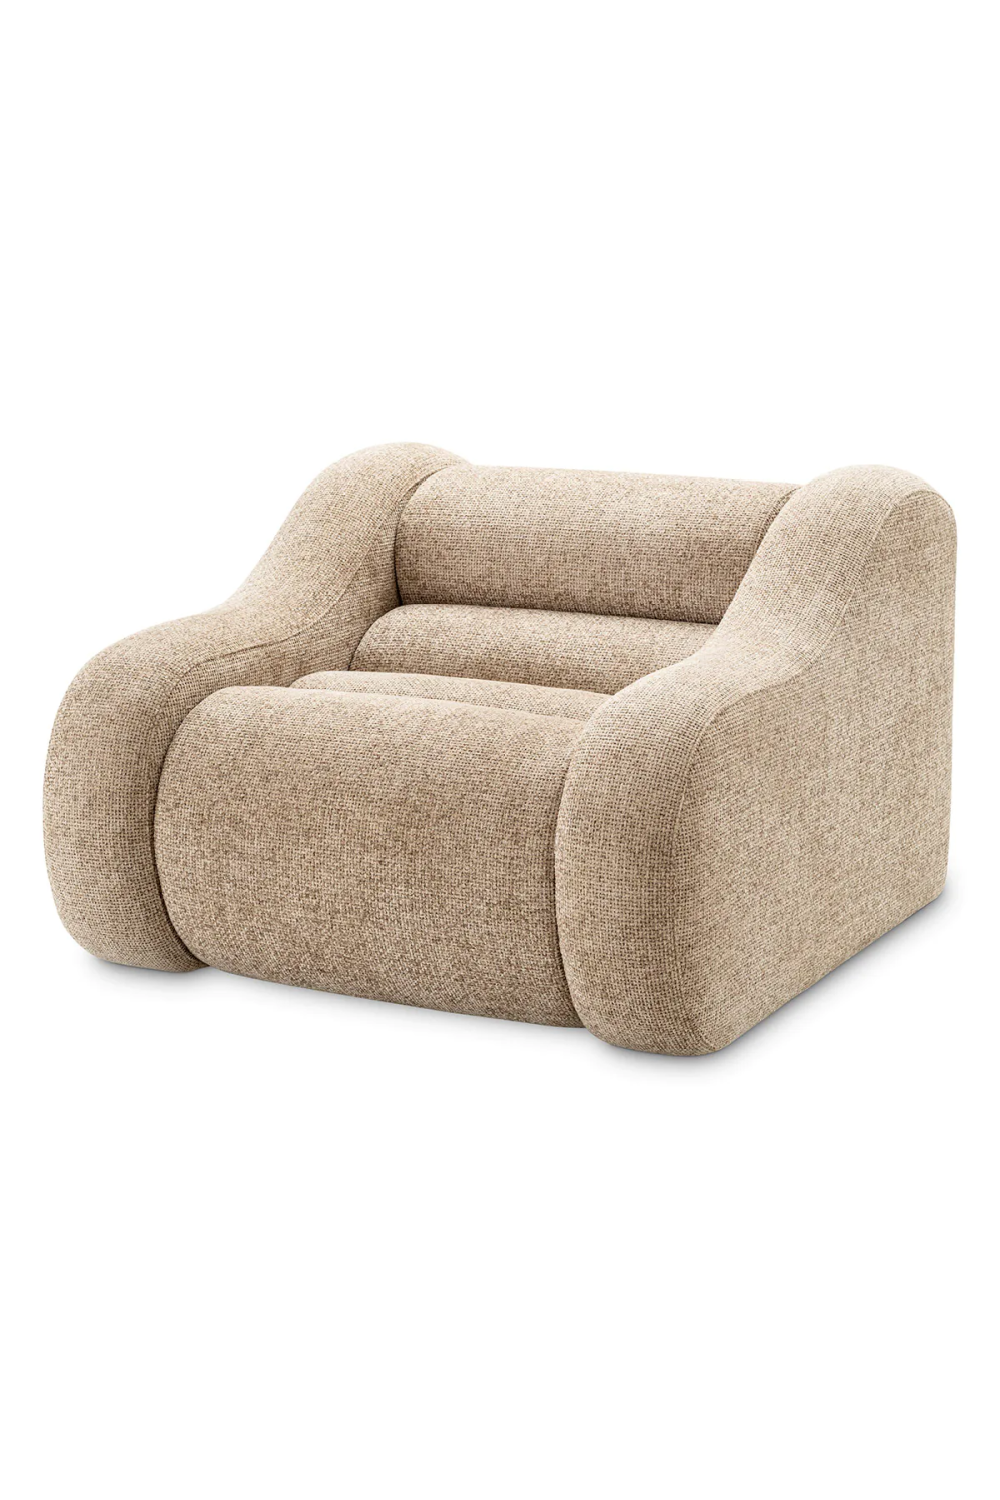 Beige Modern Lounge Chair | Eichholtz Carbone | Oroa.com